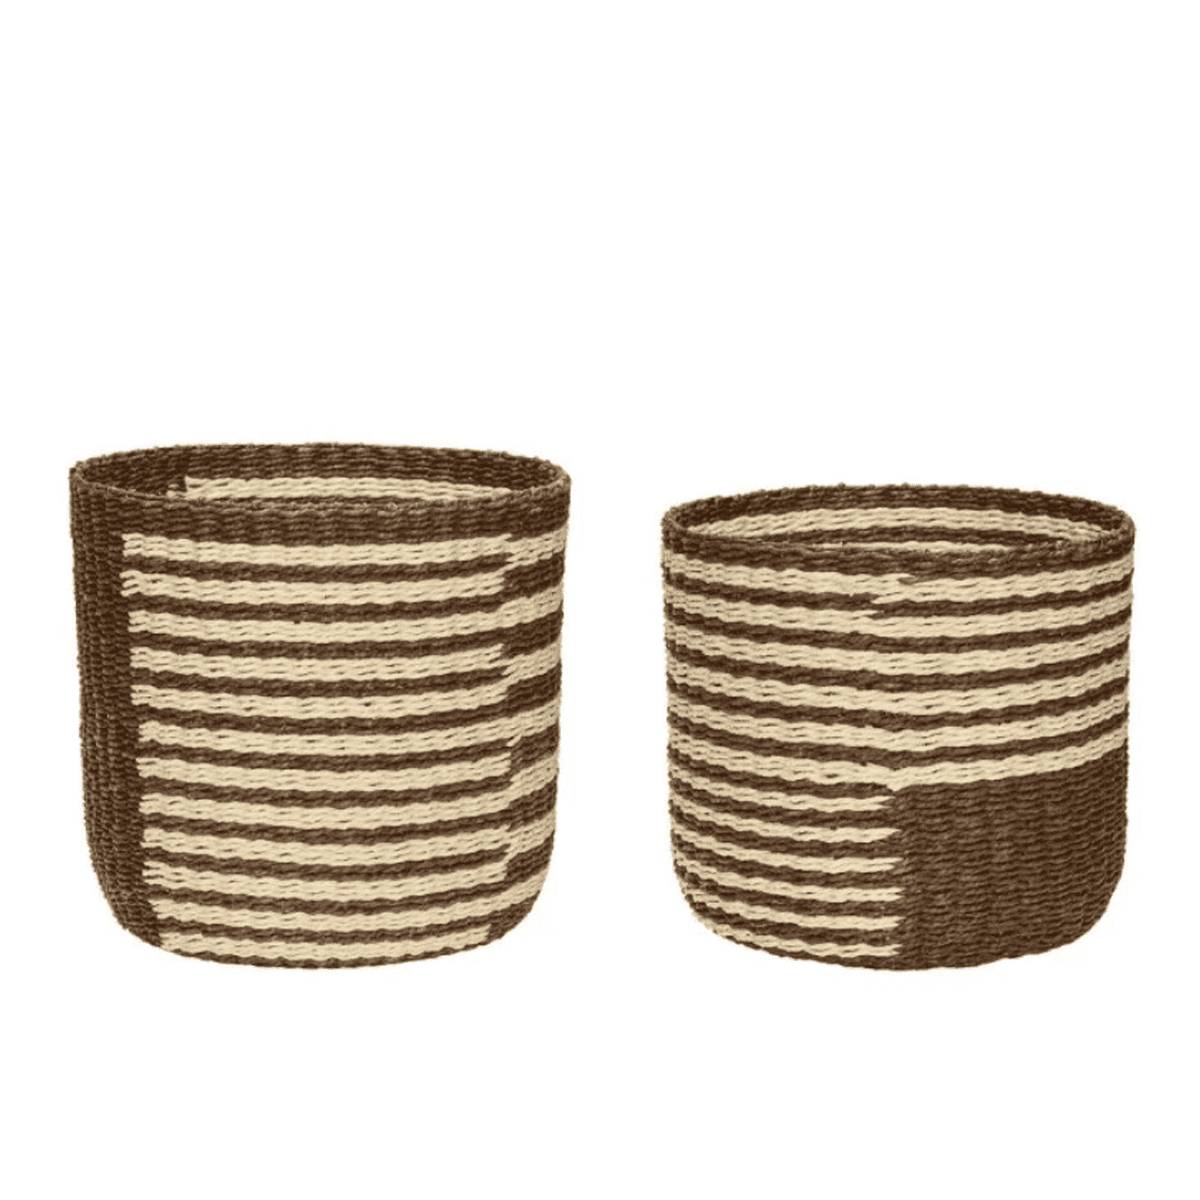 Se Hübsch Twine baskets (2 stk.) - natur/brun hos Bad&Design